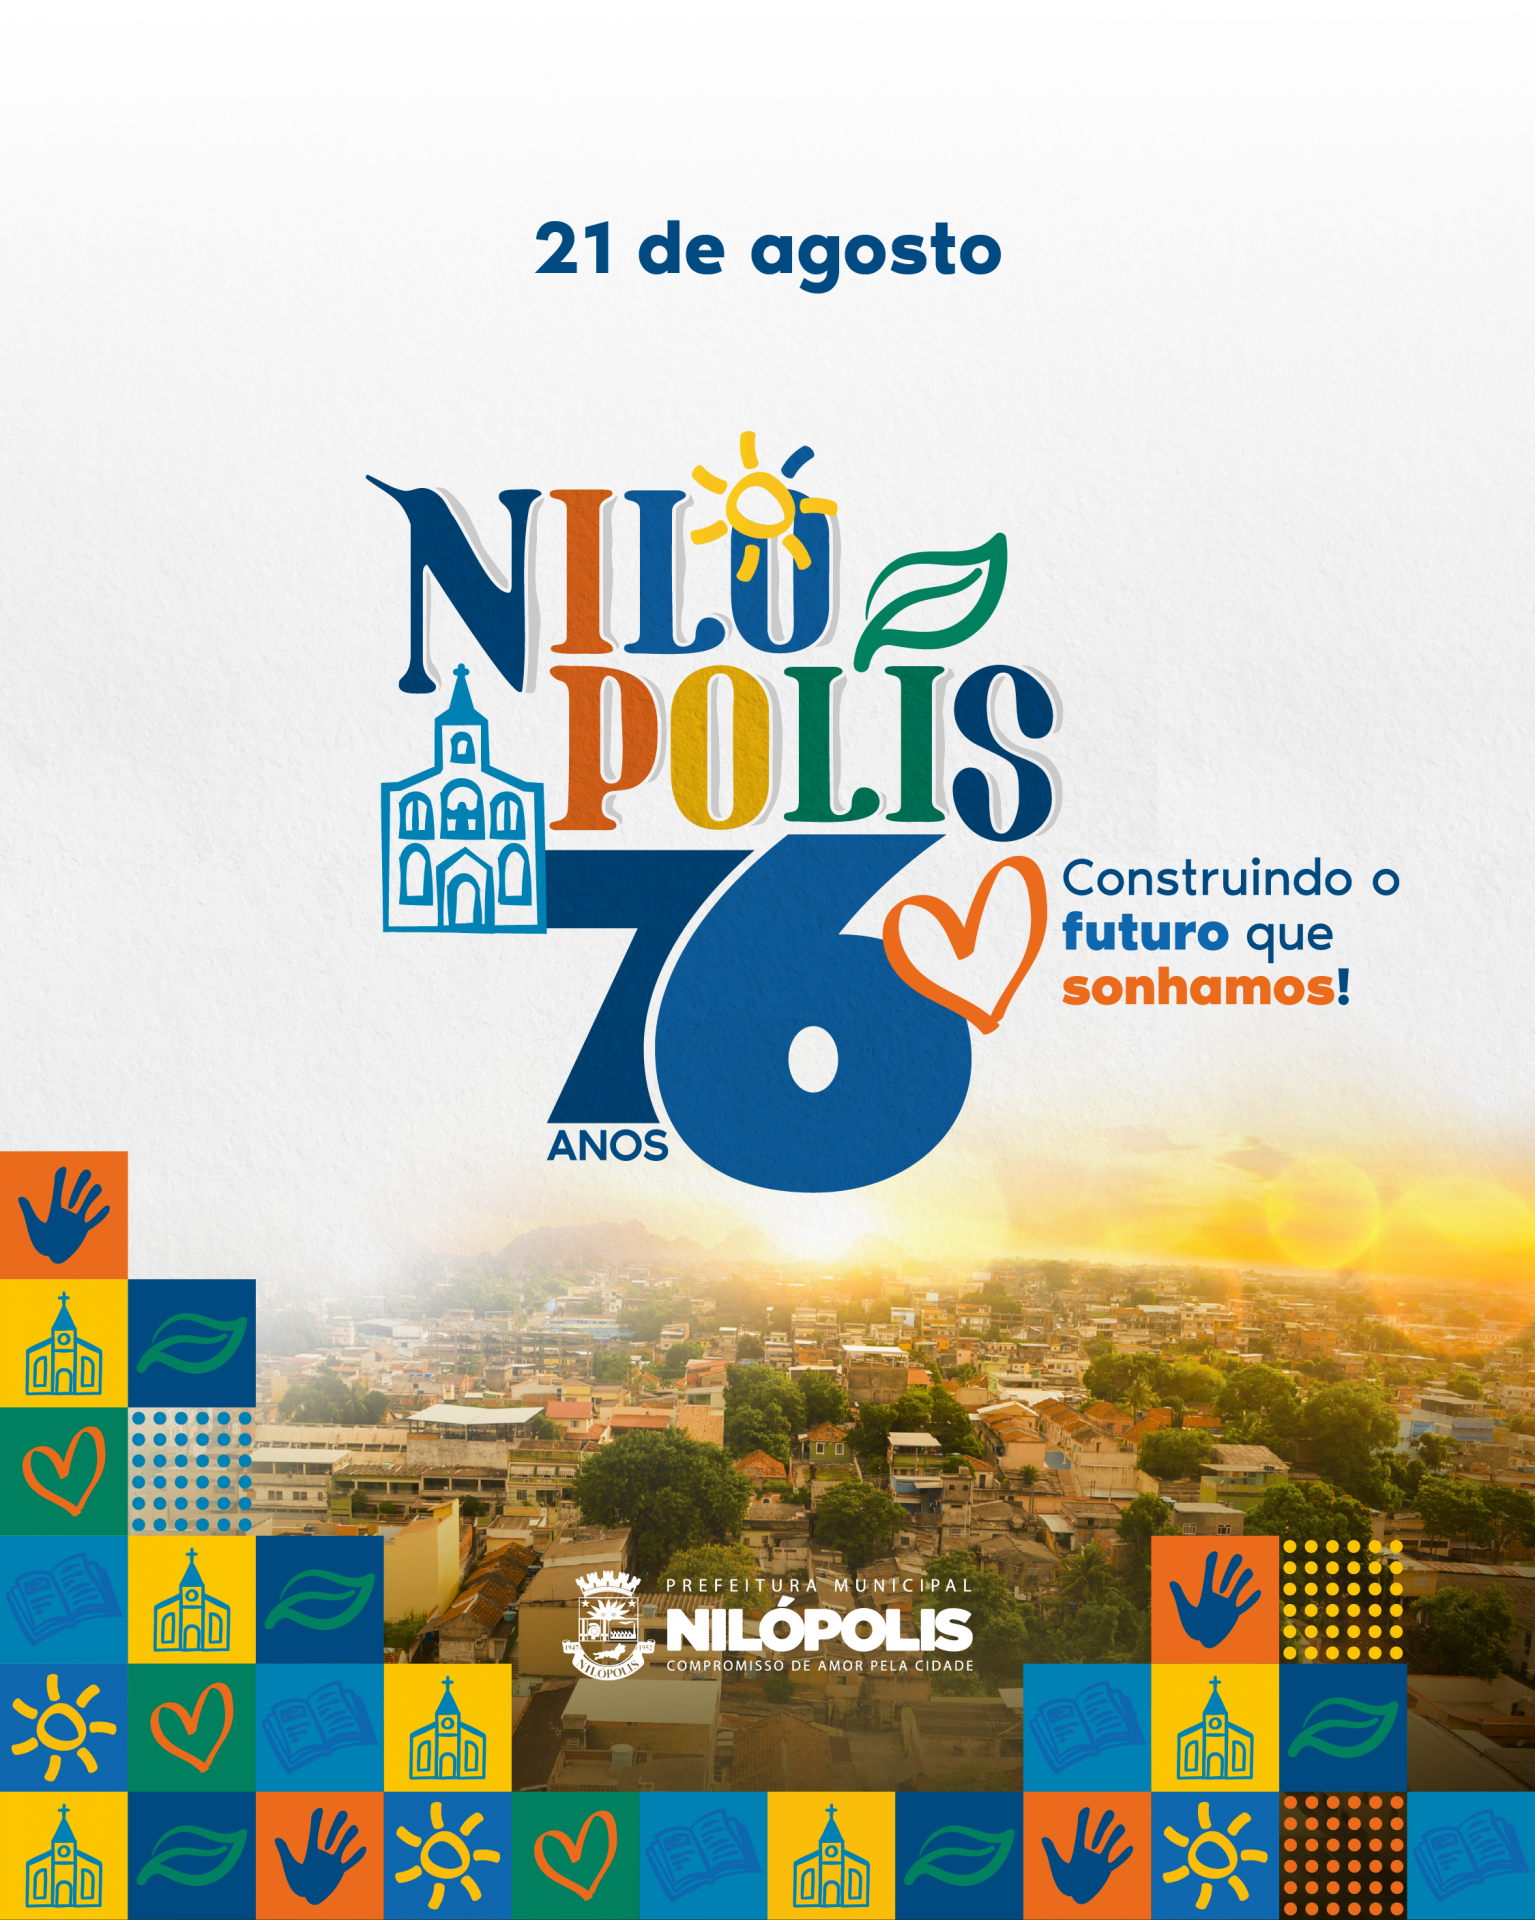 Nilópolis comemora 76 anos de emancipação no dia 21 de agosto - Divulgação / PMN